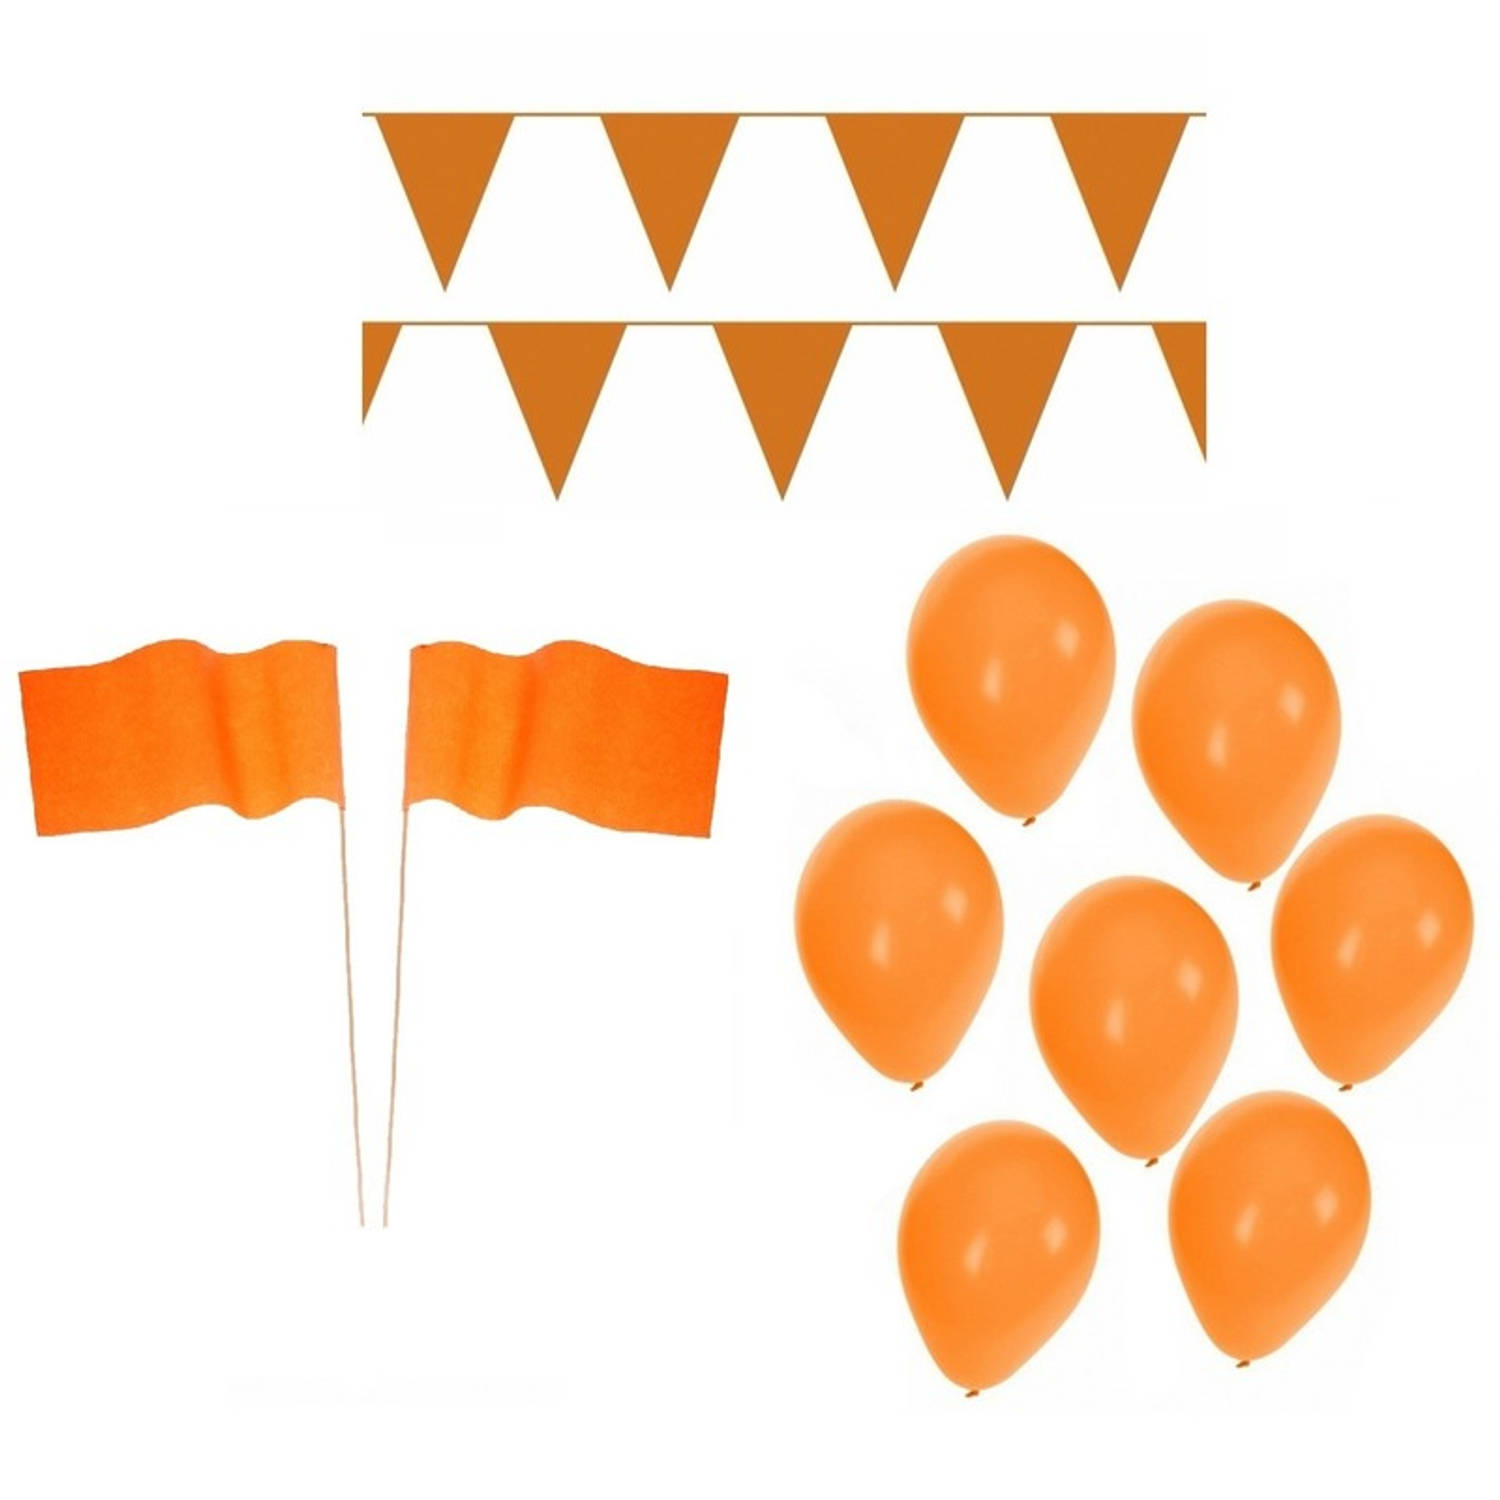 Koningsdag feestpakket met oranje versiering en decoratie - Feestpakketten